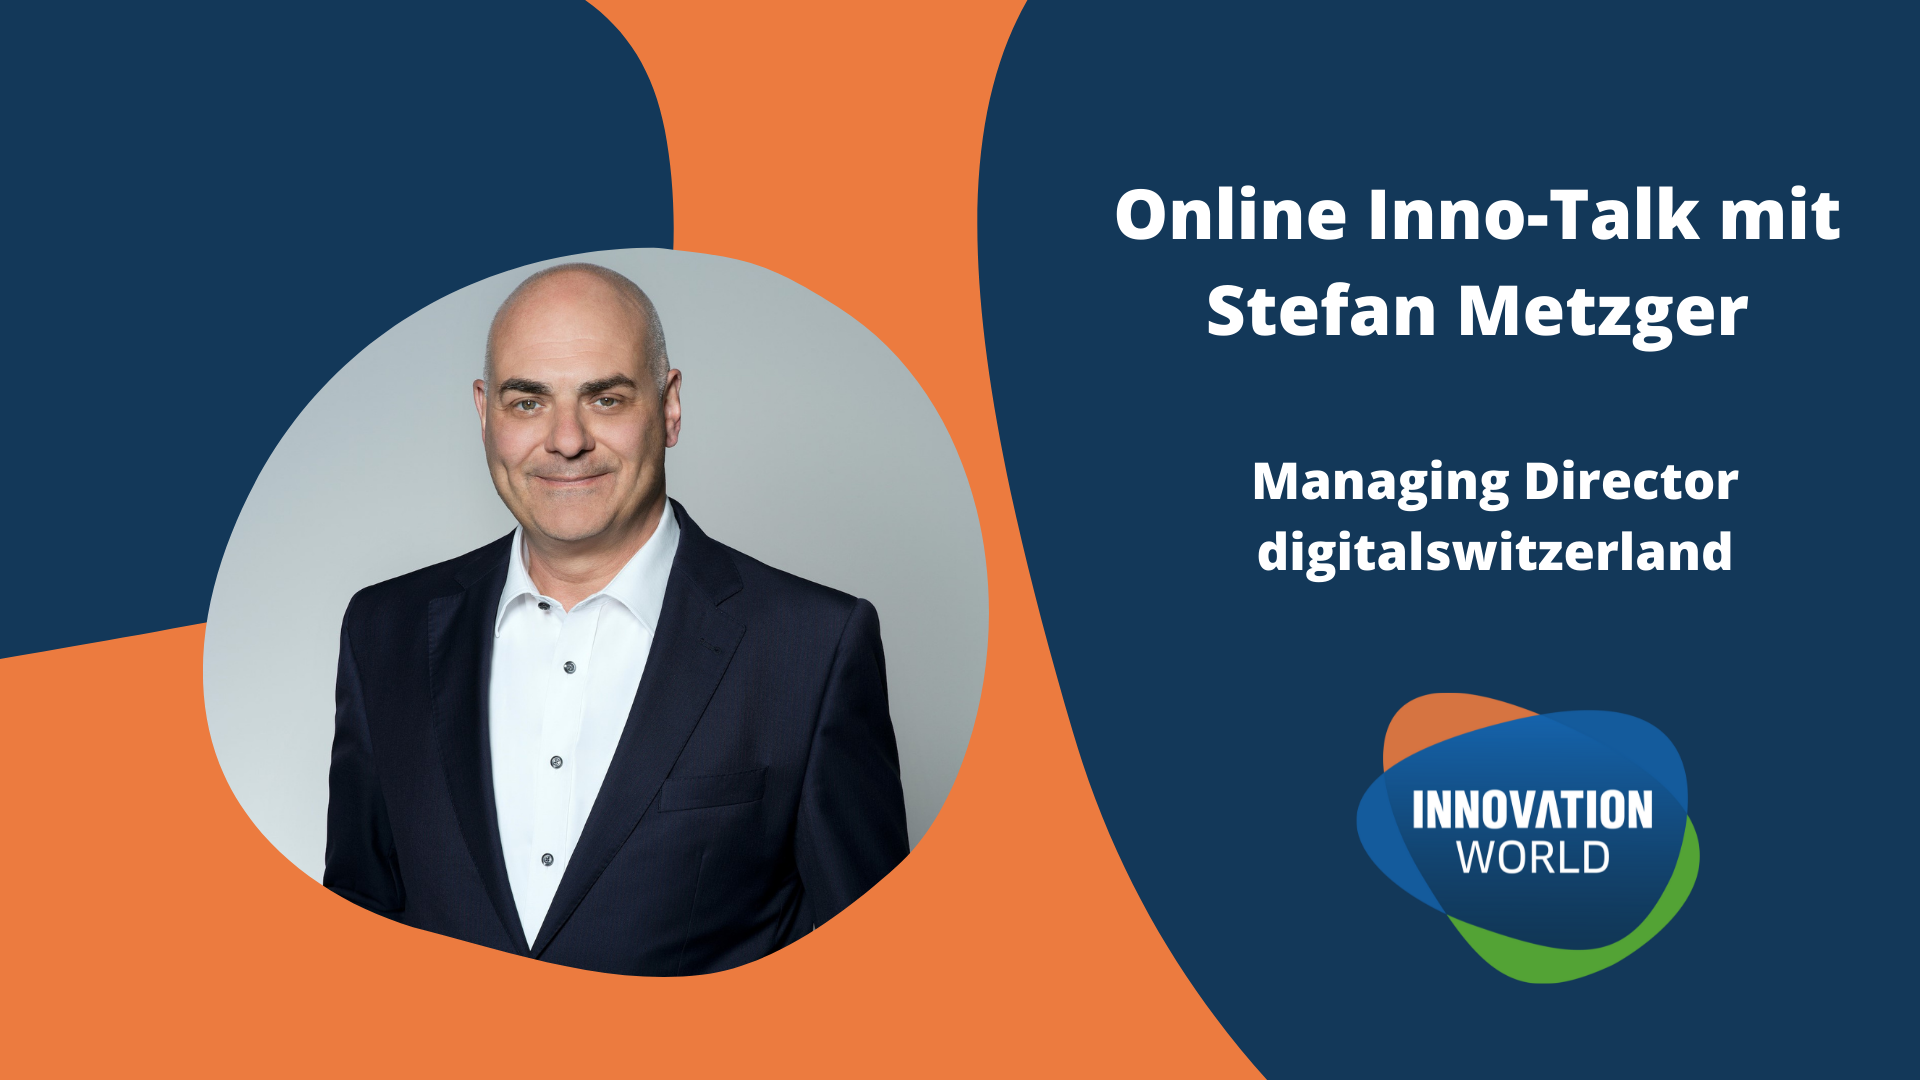 Online Inno-Talk mit Stefan Metzger, Managing Director digitalswitzerland organized by Innovation World Switzerland